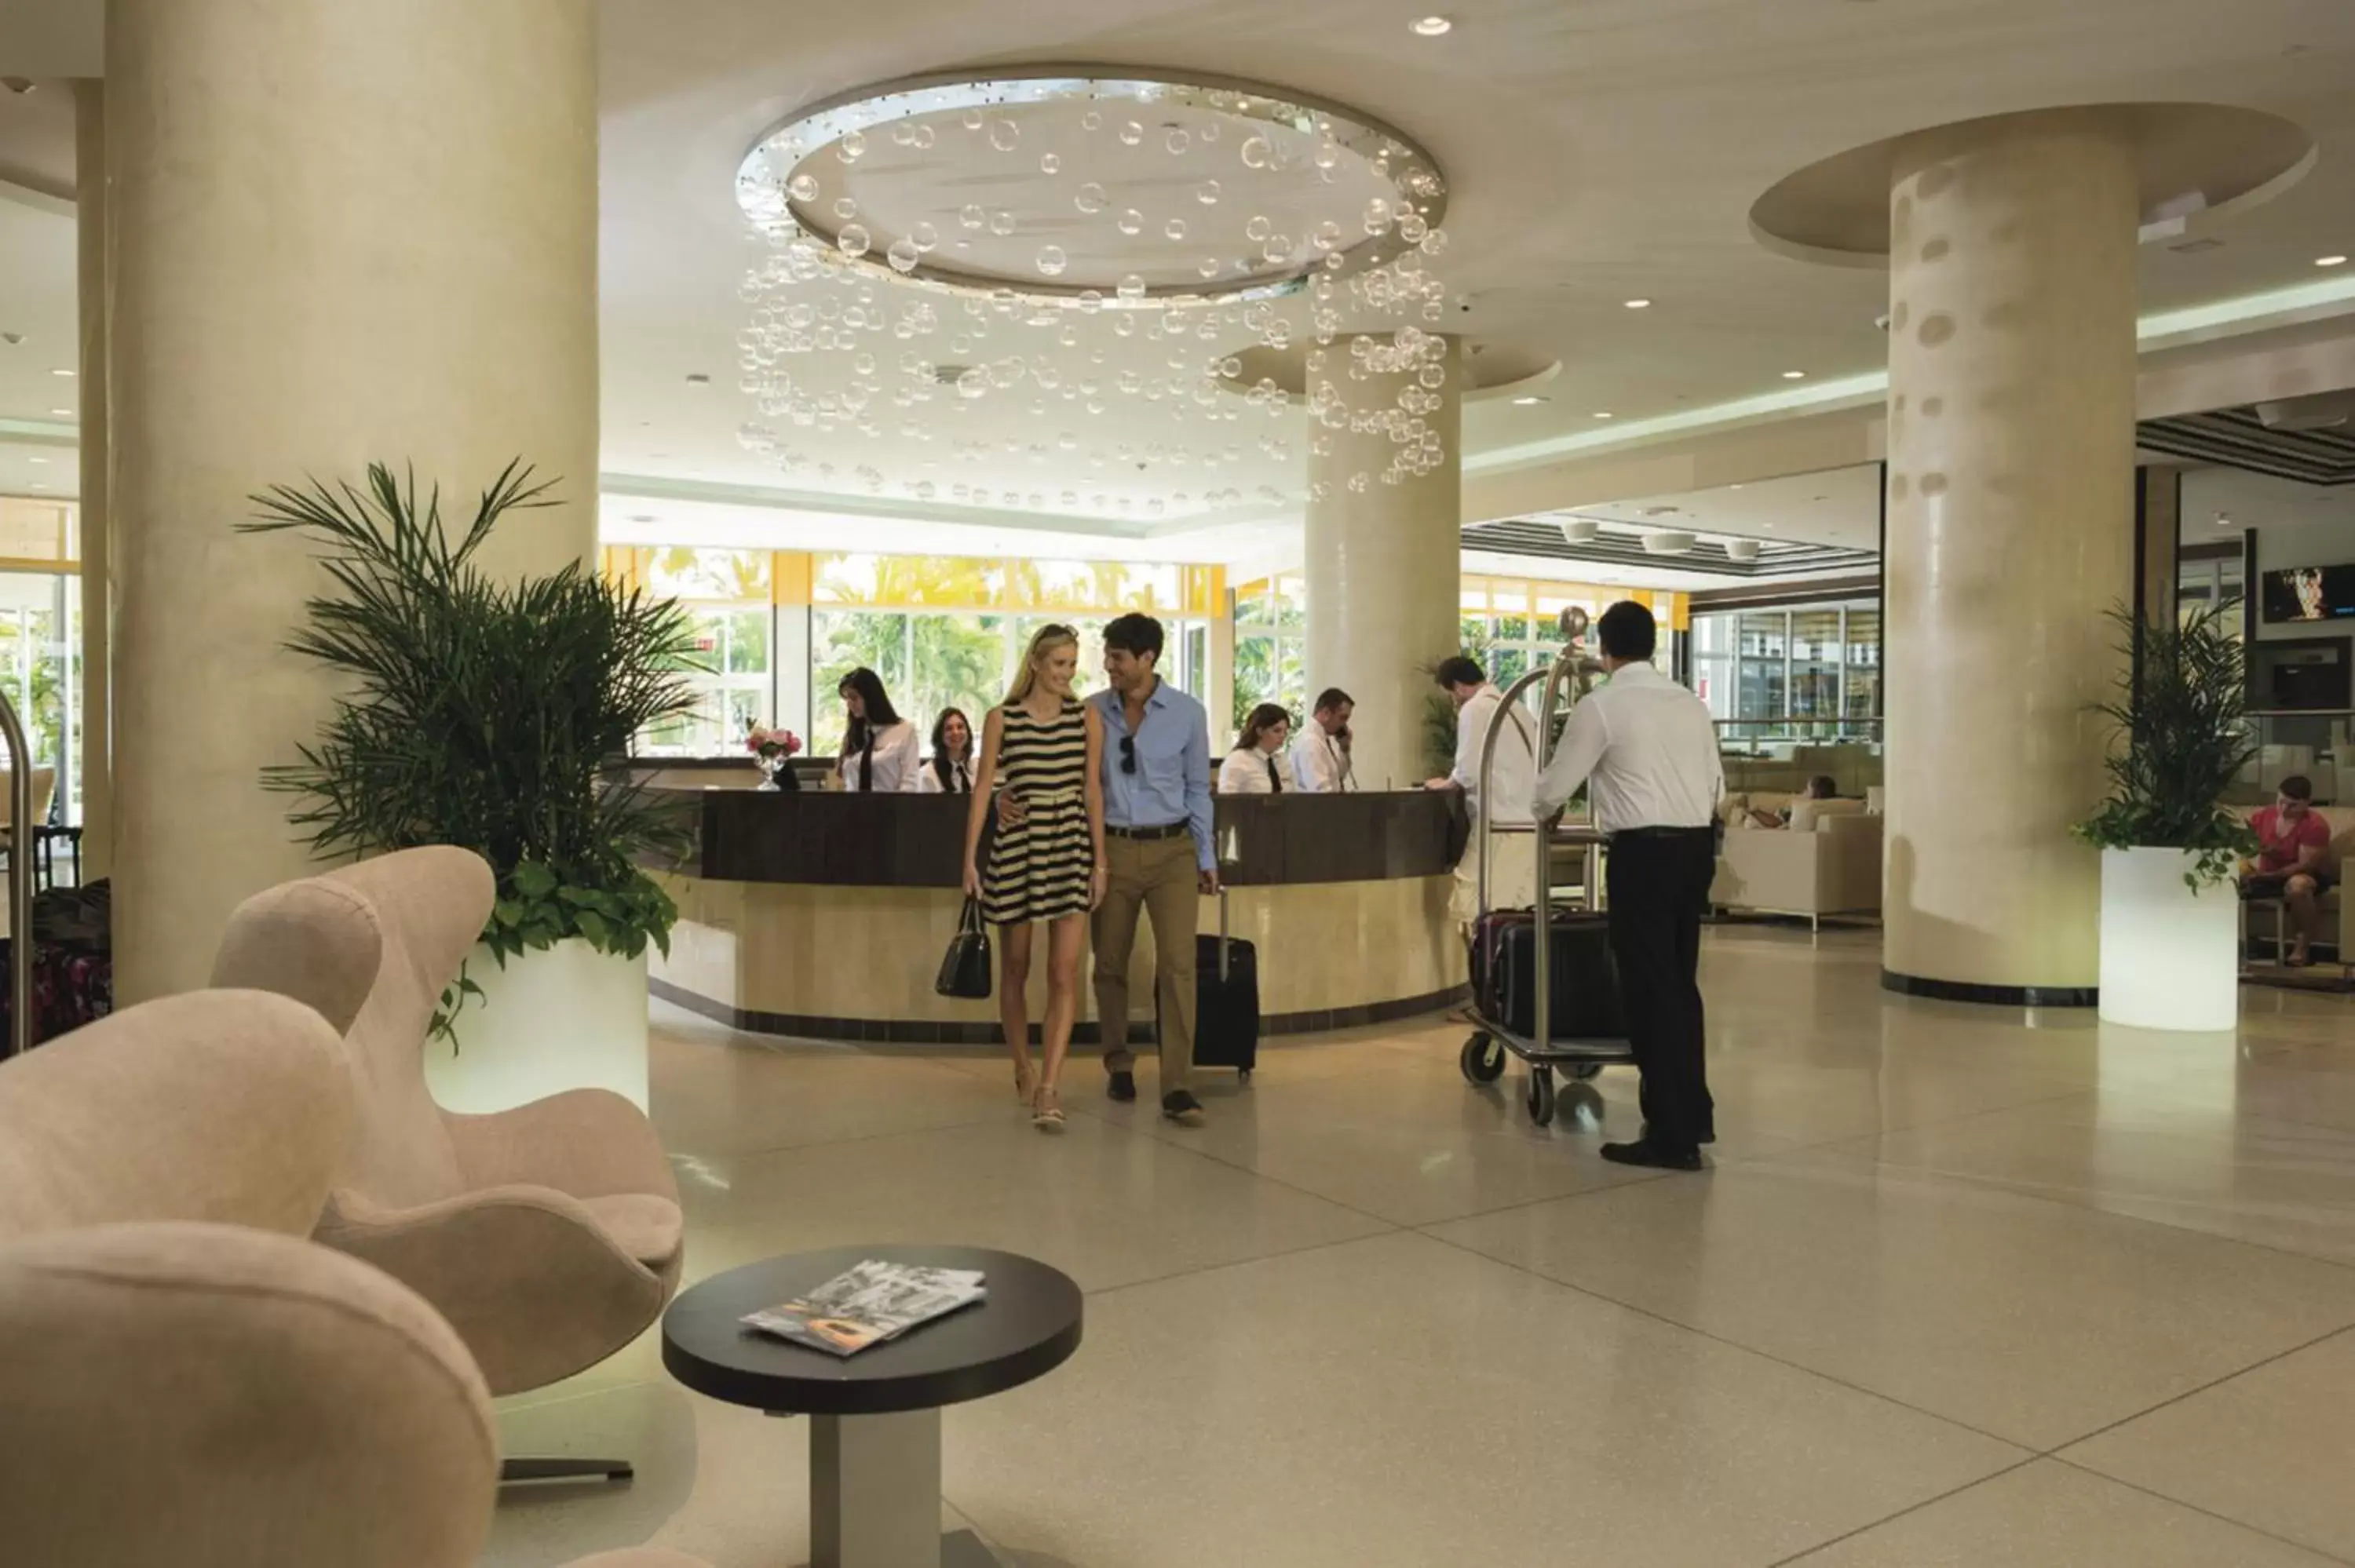 Lobby or reception in Riu Plaza Miami Beach